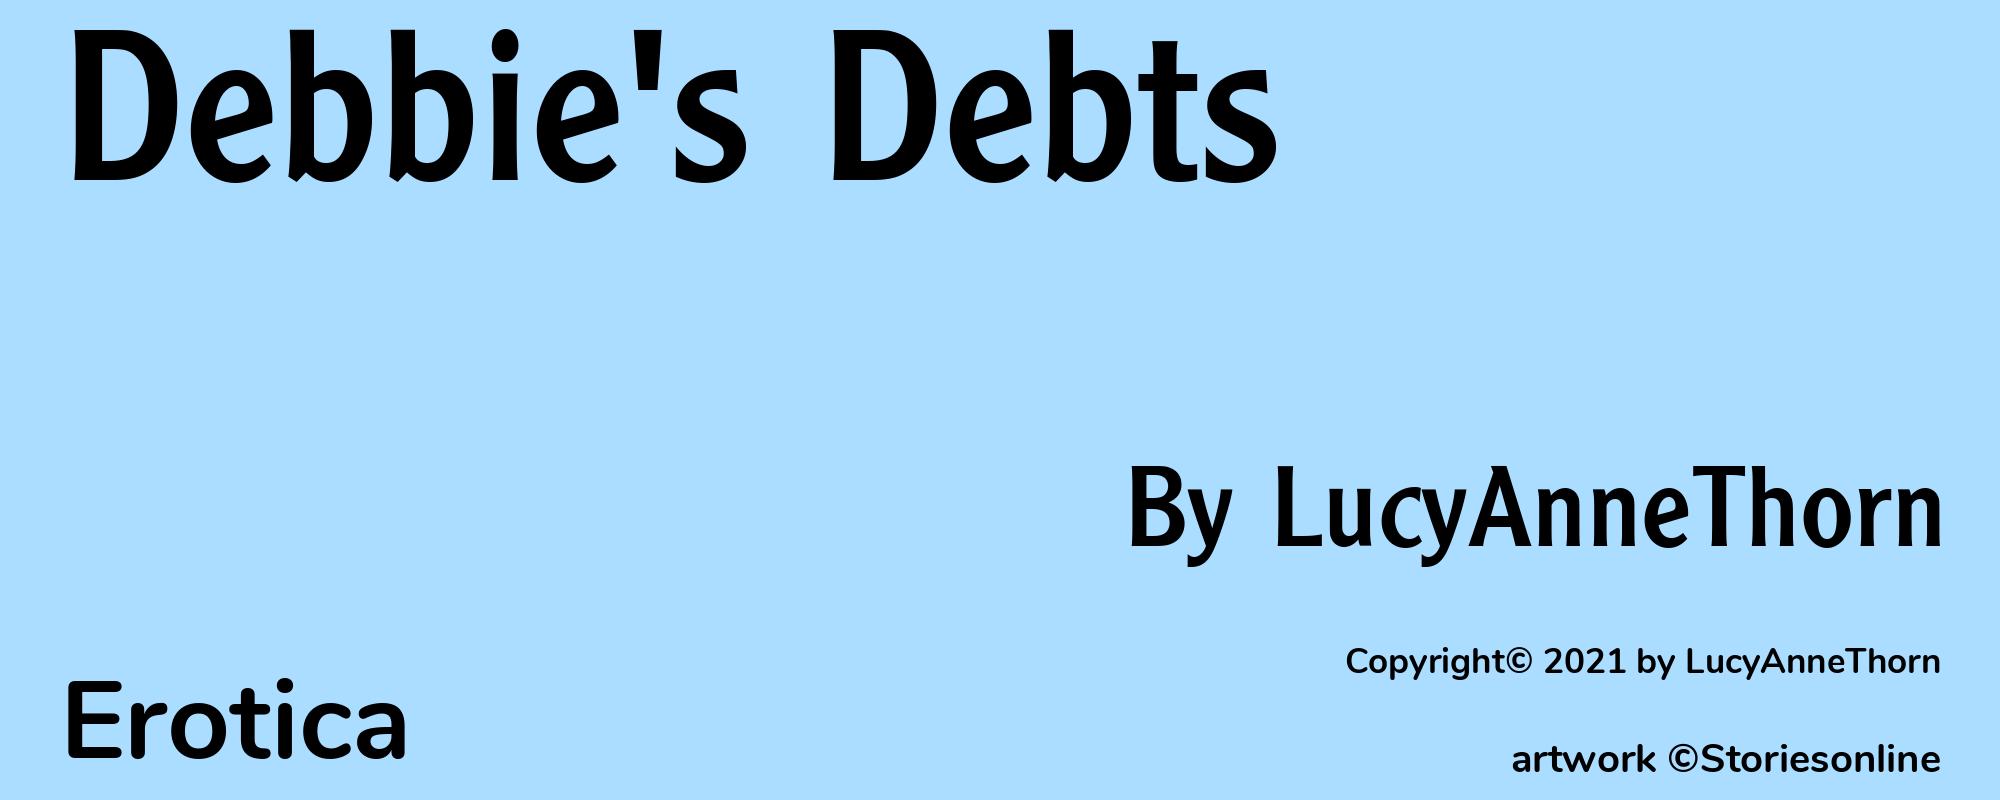 Debbie's Debts - Cover